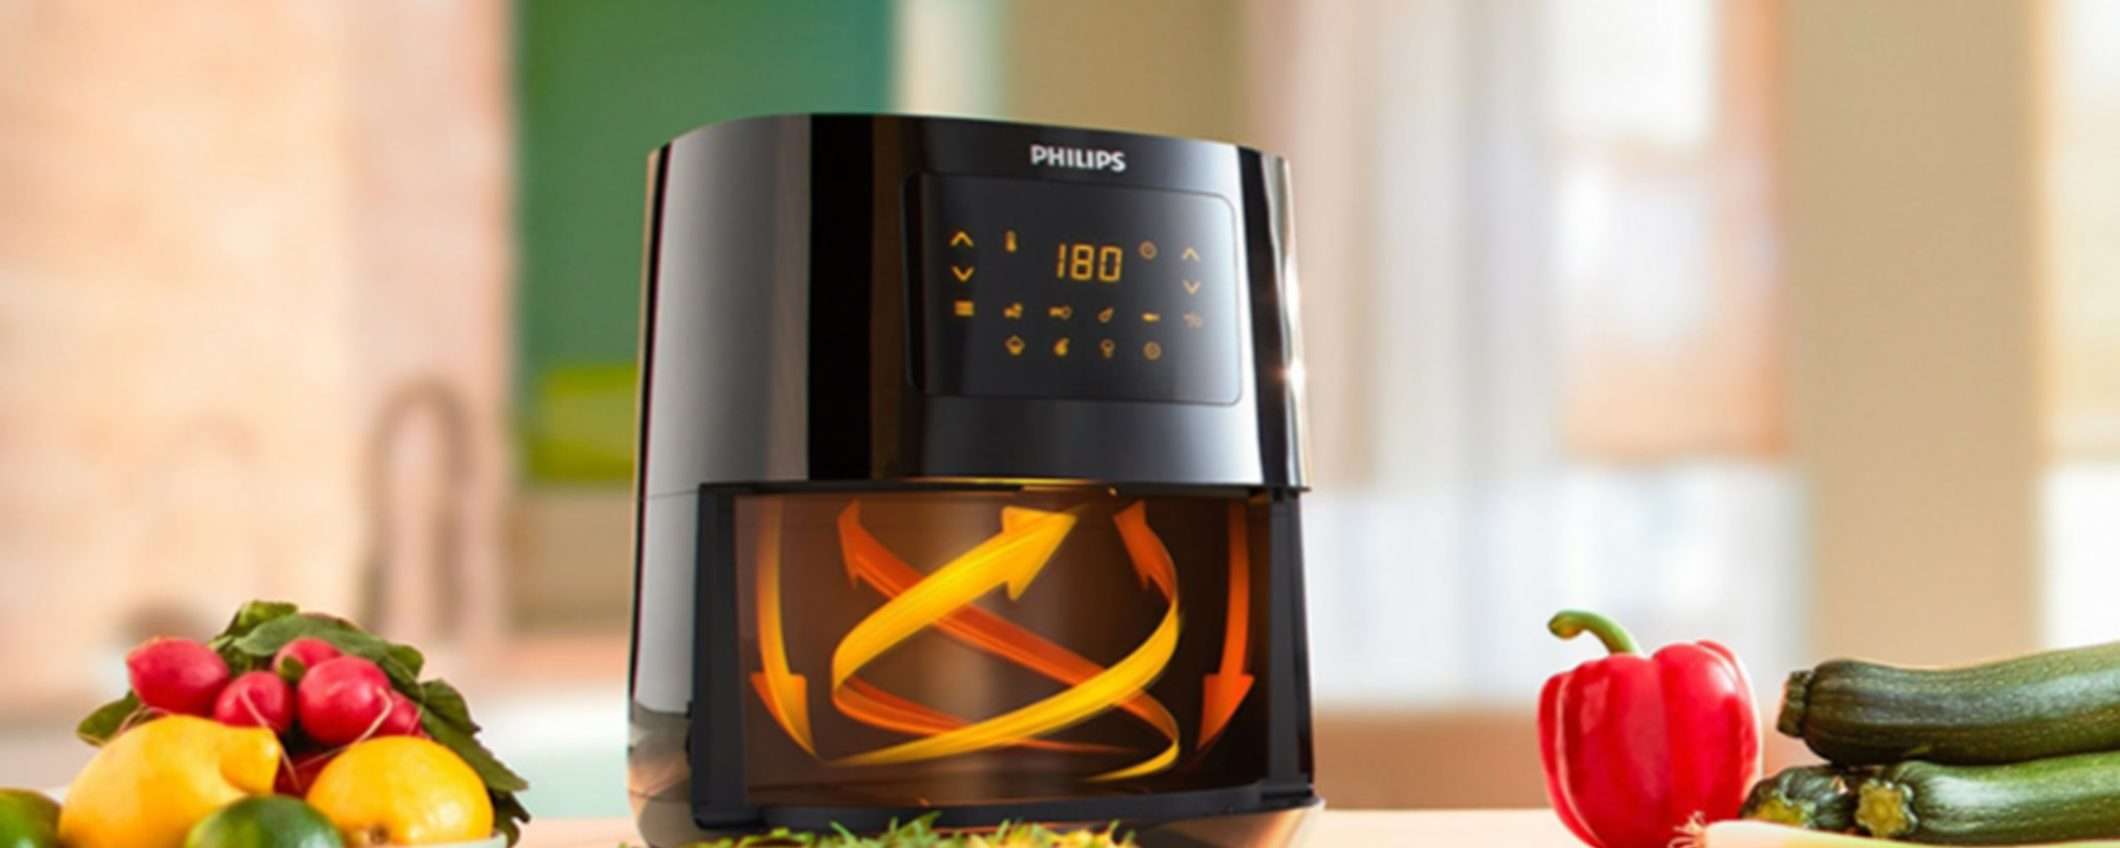 Friggitrice ad aria Philips in offerta: il prezzo crolla da 249,99 a soli 149,99€